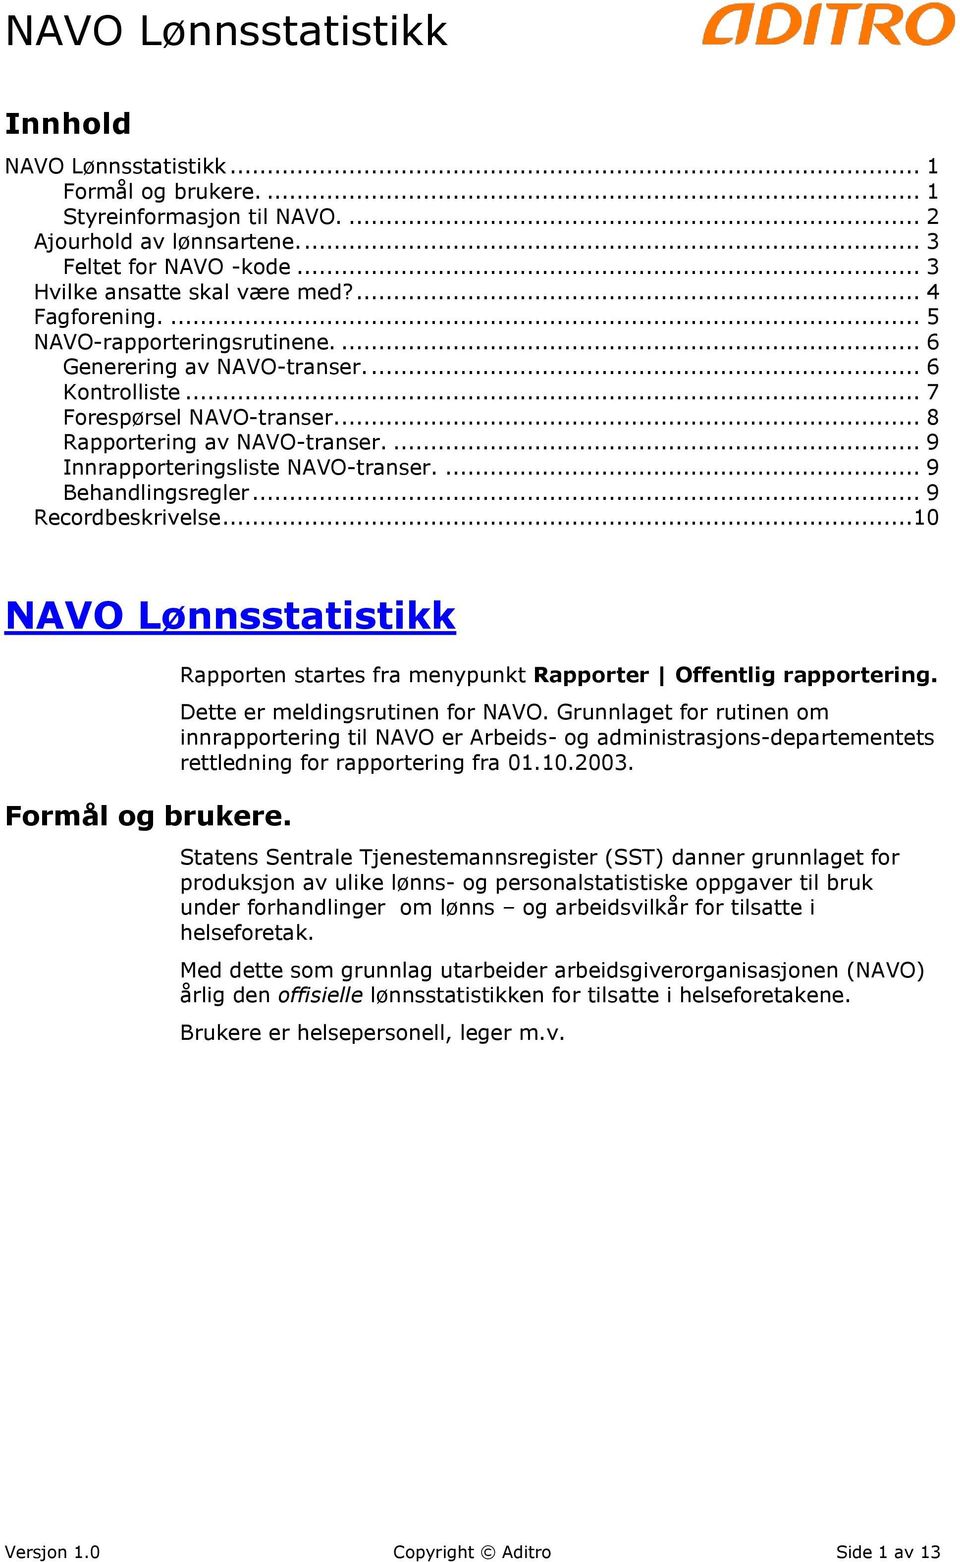 ... 9 Behandlingsregler... 9 Recordbeskrivelse...10 NAVO Lønnsstatistikk Formål og brukere. Rapporten startes fra menypunkt Rapporter Offentlig rapportering. Dette er meldingsrutinen for NAVO.